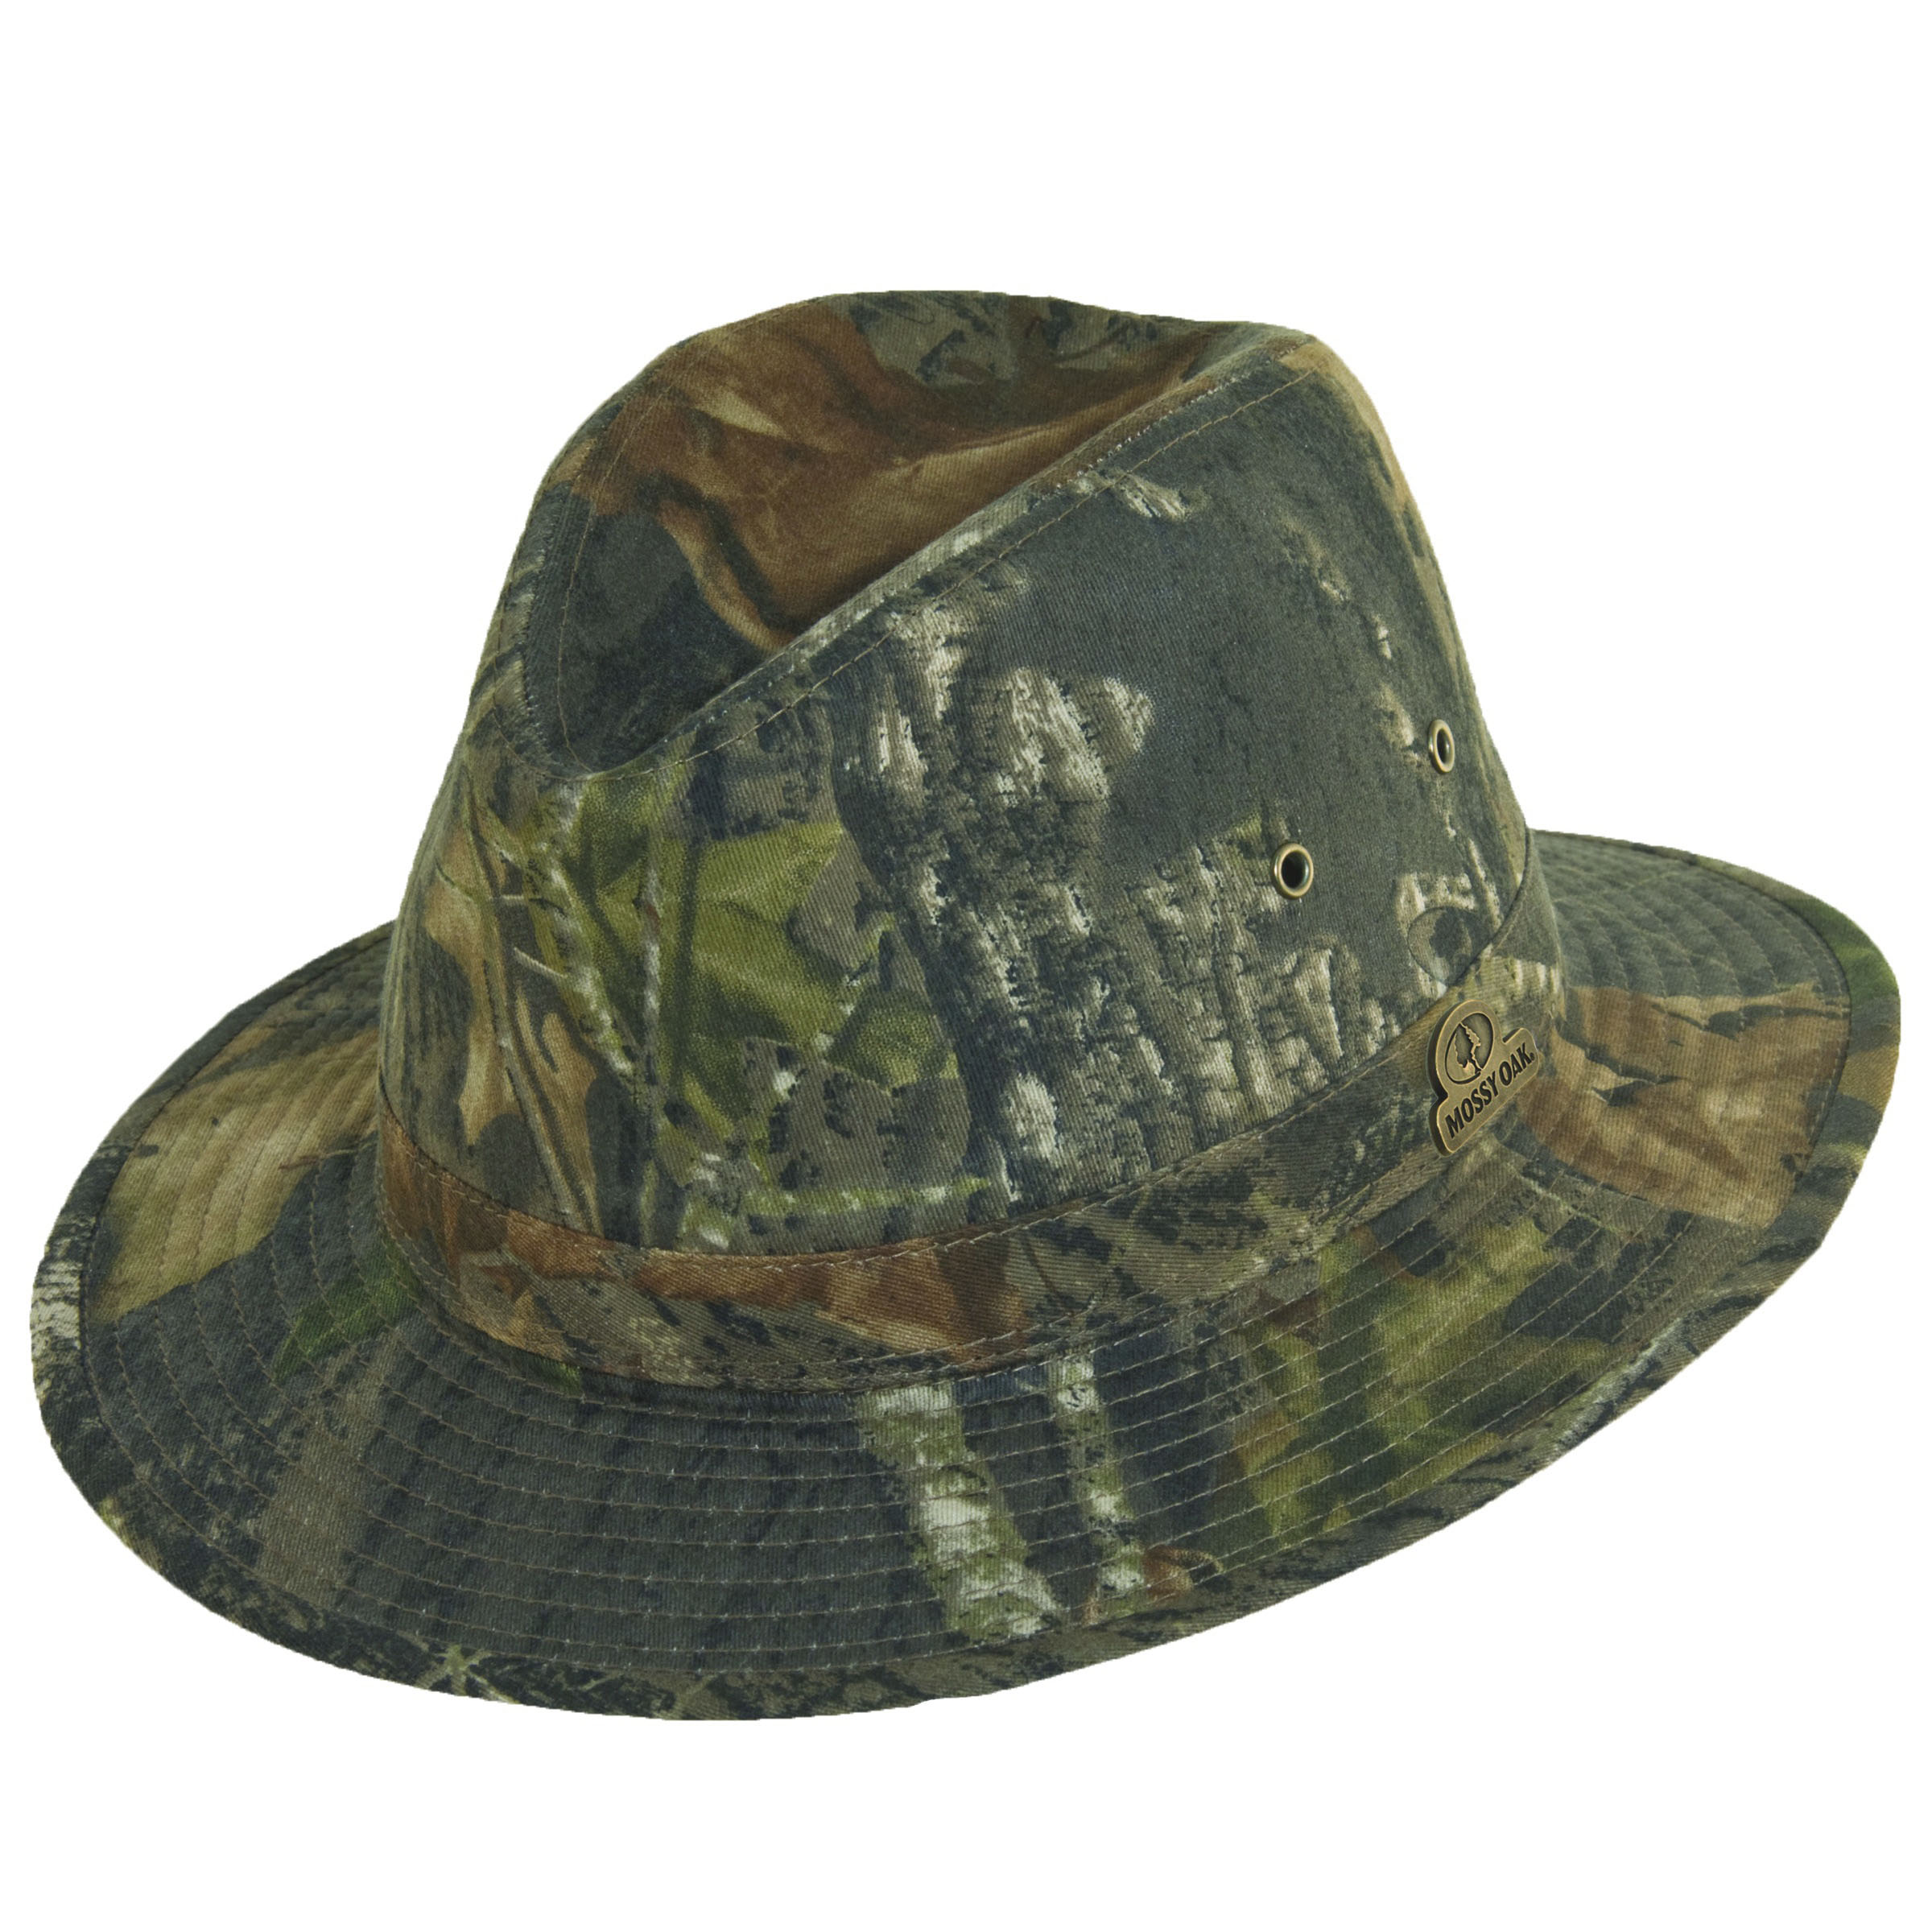 Mossy Oak Cotton Hats for Men